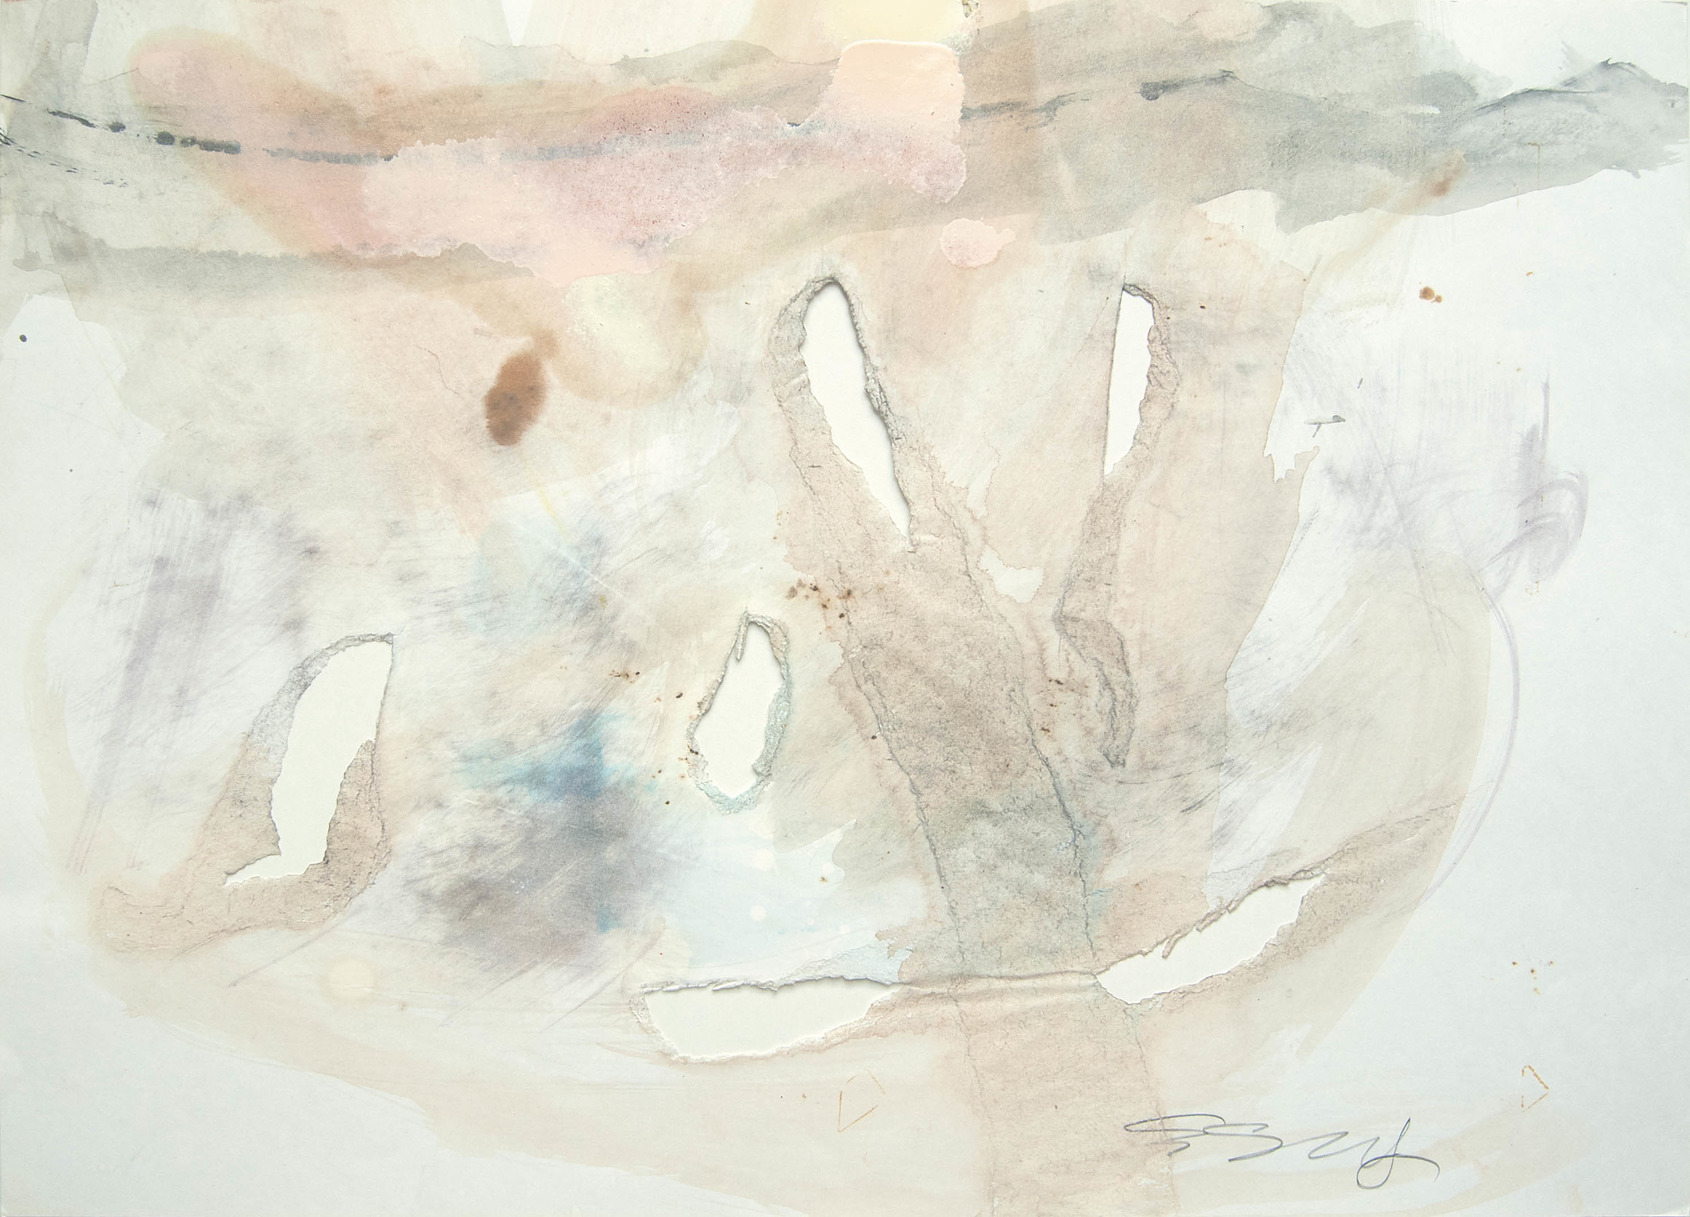 Ana esquisse, 1962, 36.2x51.2 cm, Nishinomiya, Japan, Hole Esquisse, hole on paper, mixed media. 